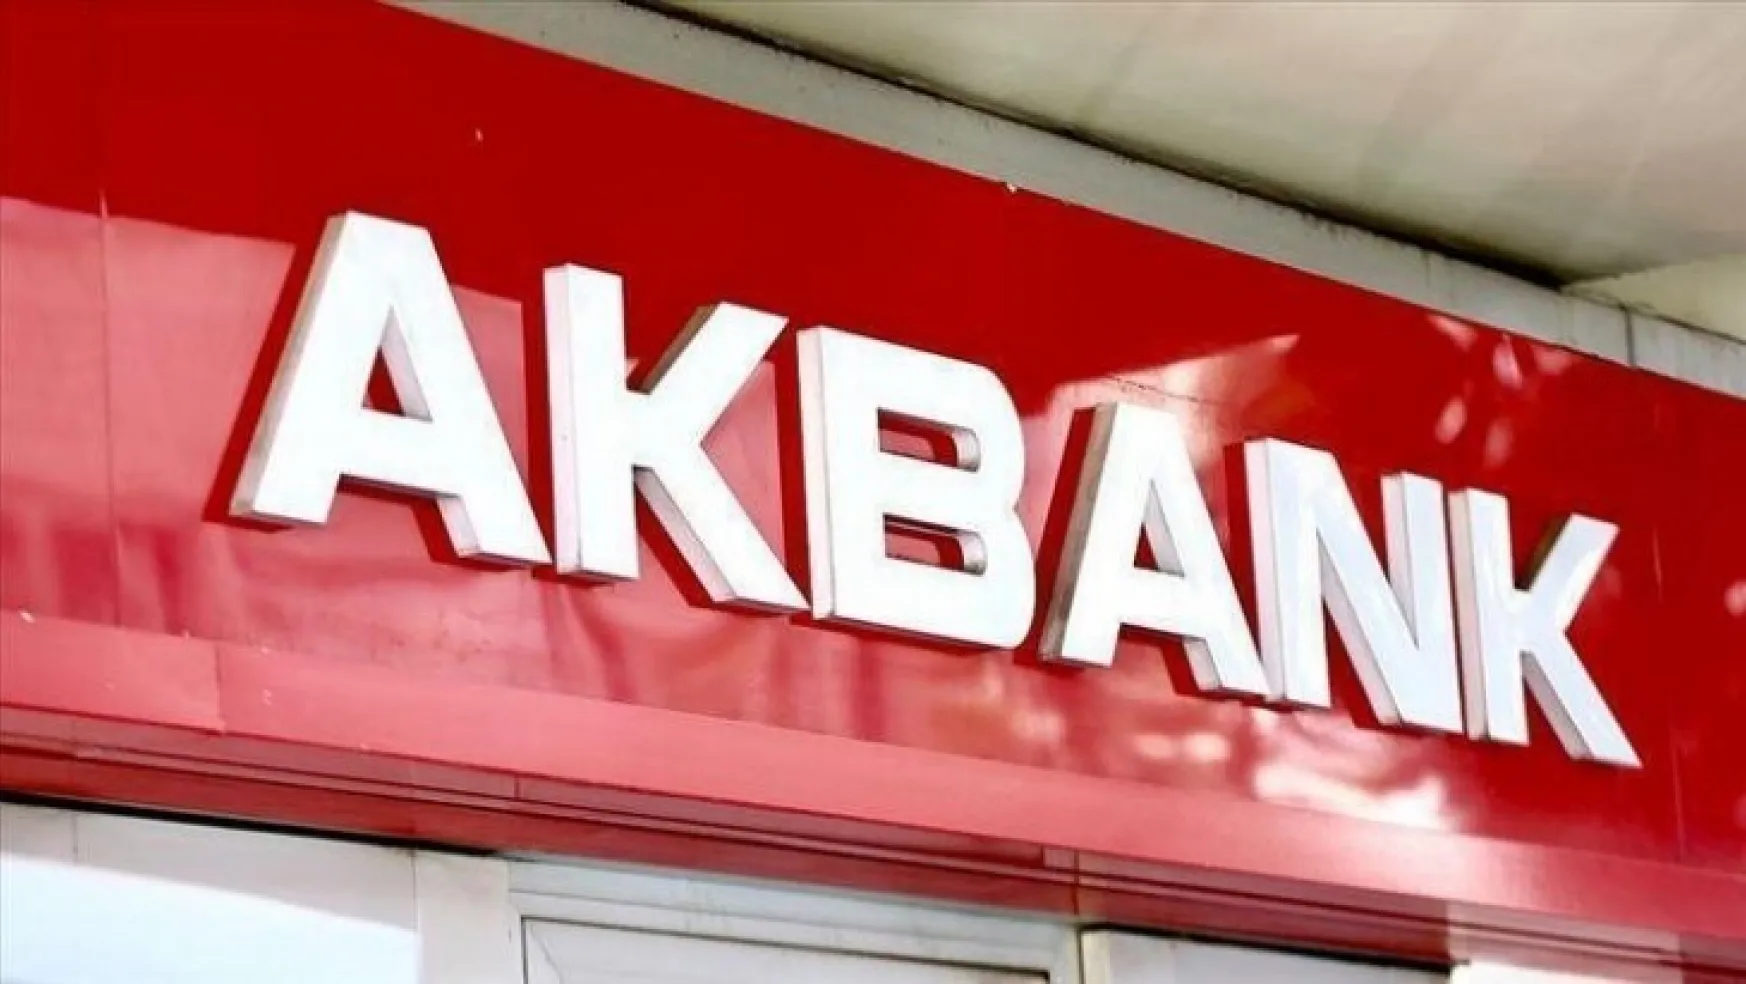 AKBANK: Tüm kanallarımız hizmete açıldı